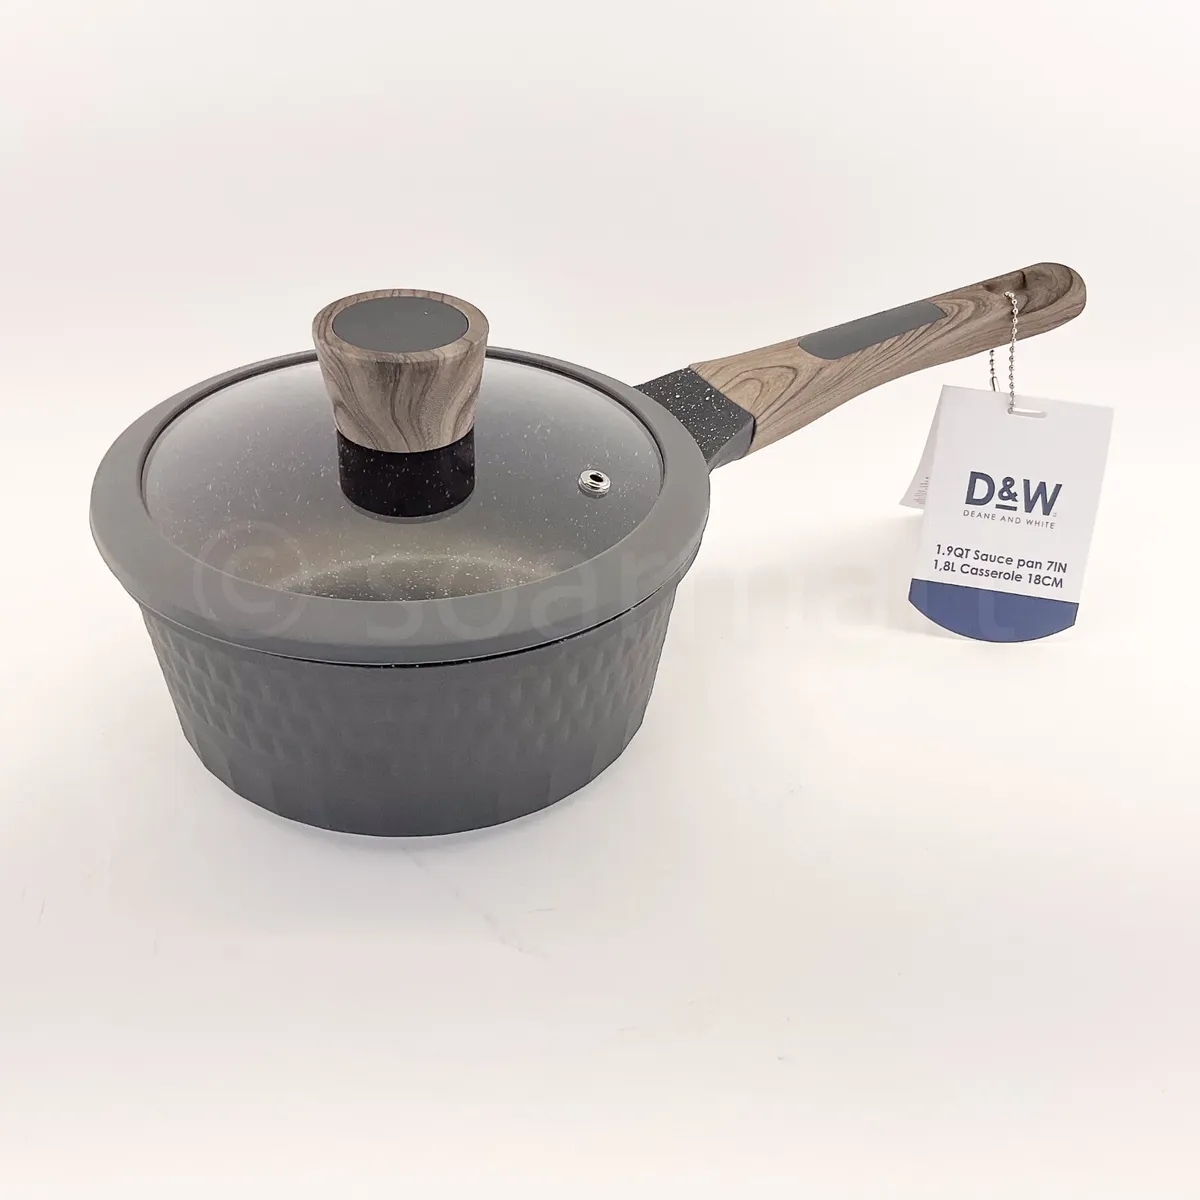 D&W Saucepan NonStick With Lid 7 inch 1.9-Qt Small Pot PFOA Free